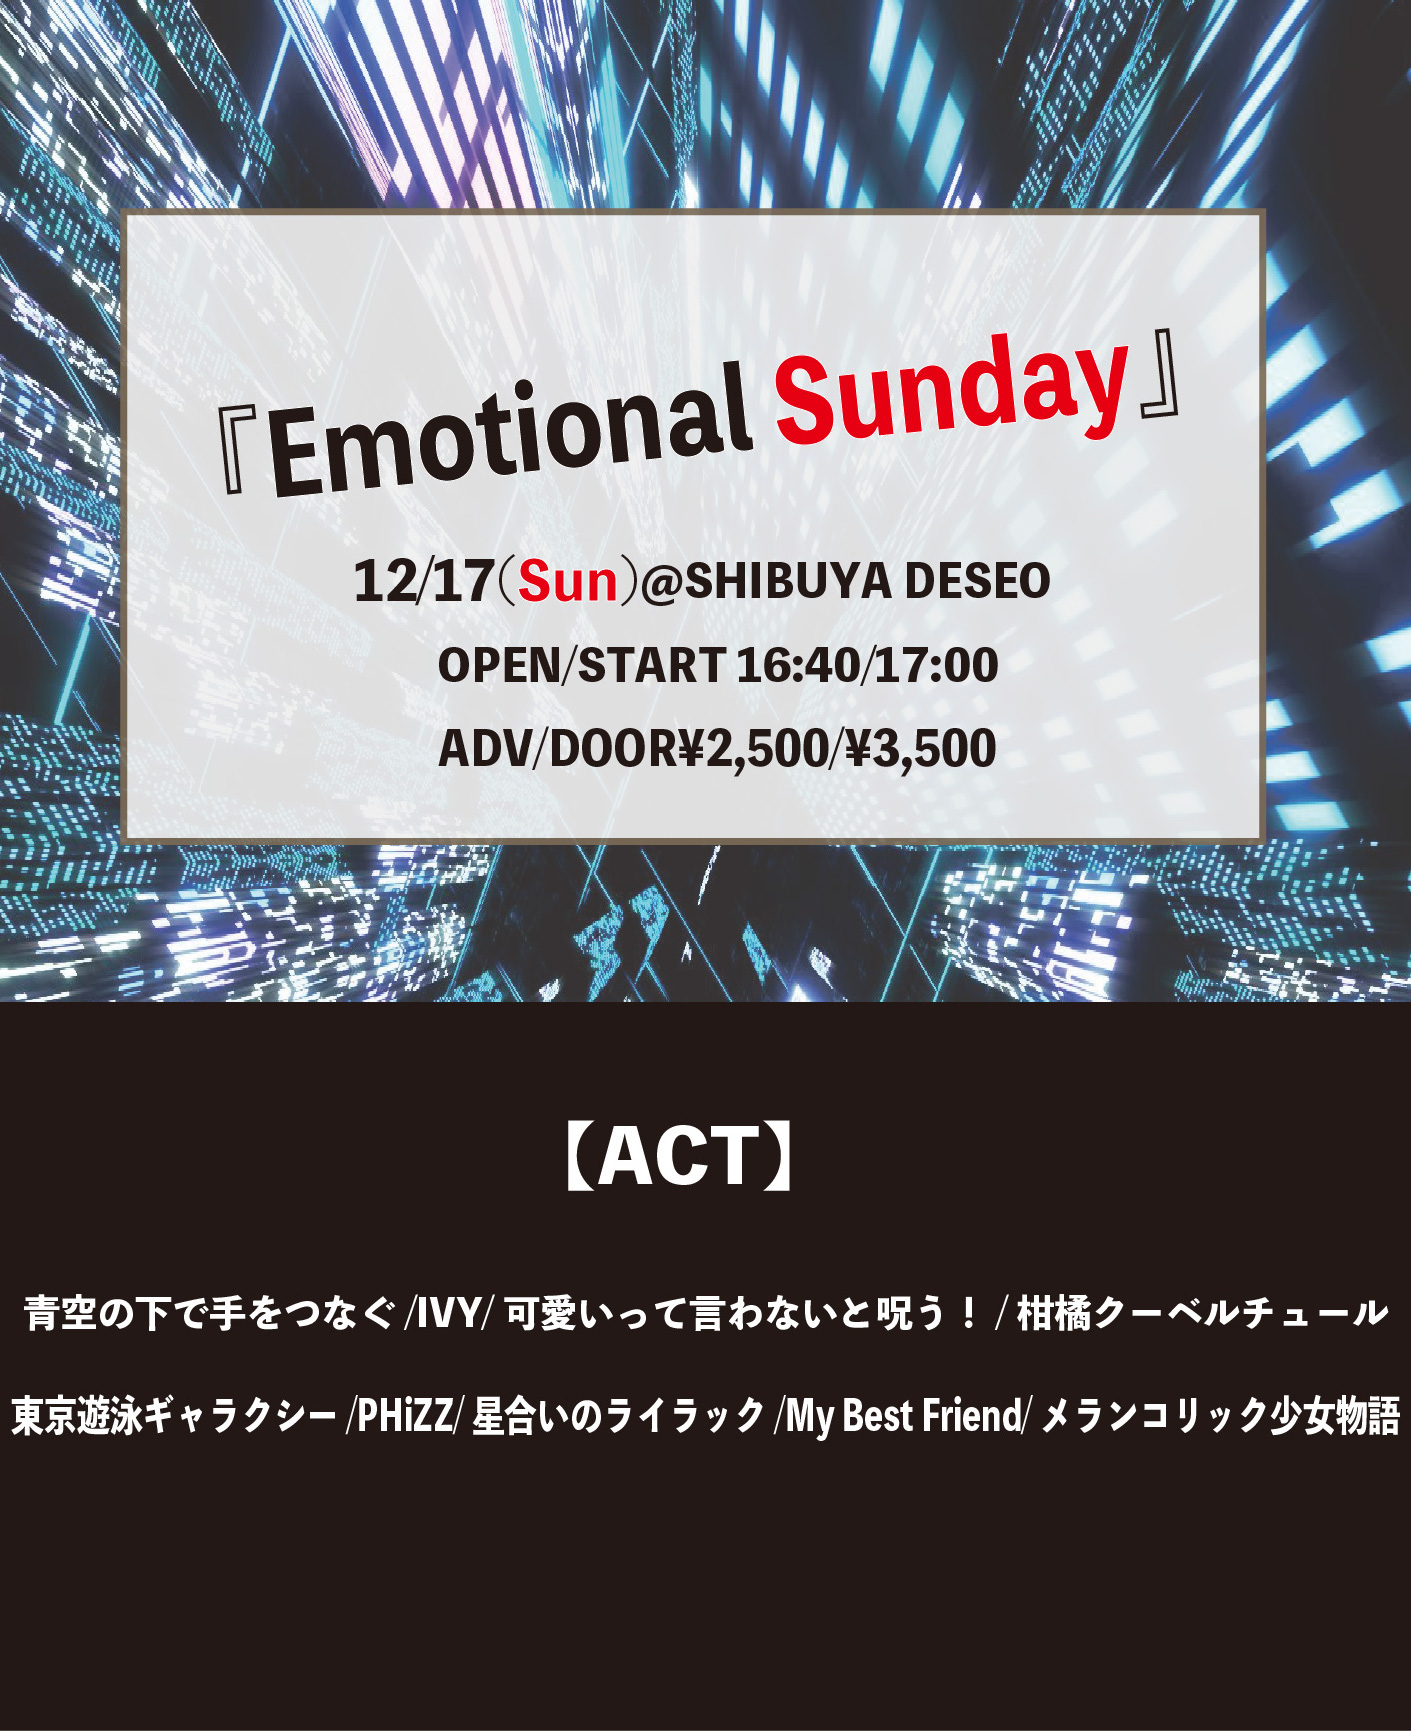 Emotional Sunday